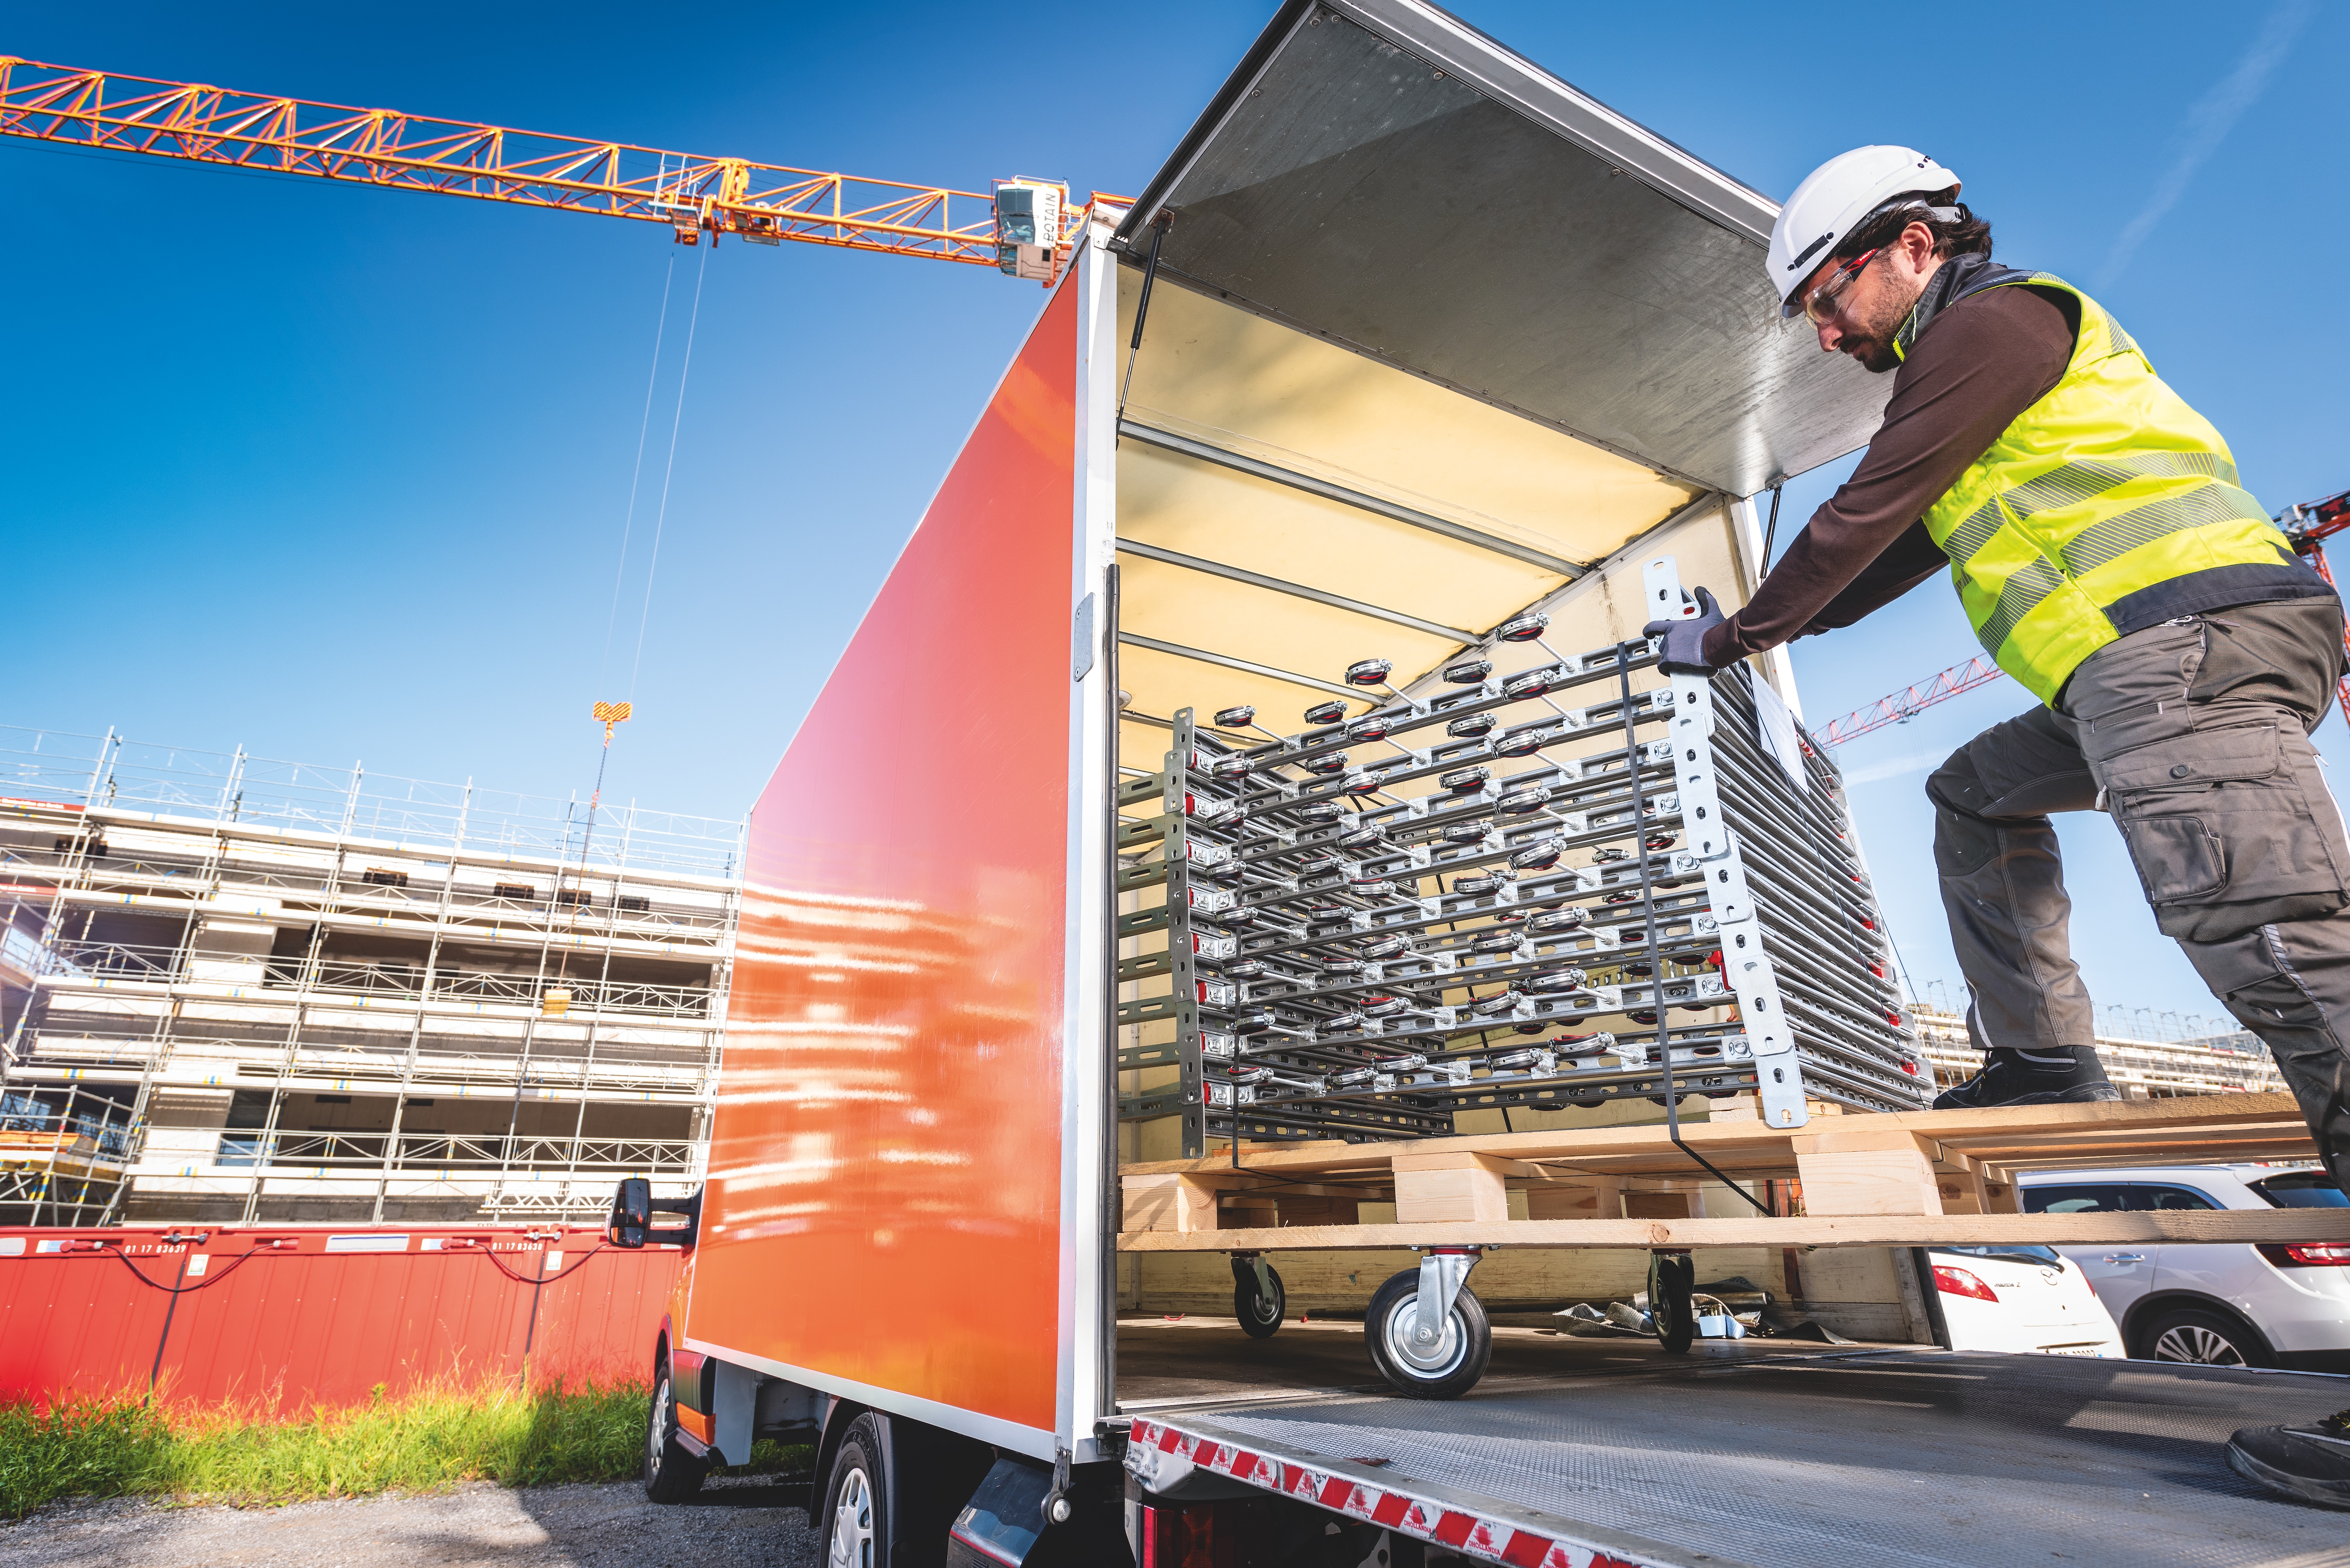 Arbetare som lastar av prefabricerade byggbara moduler från en lastbil